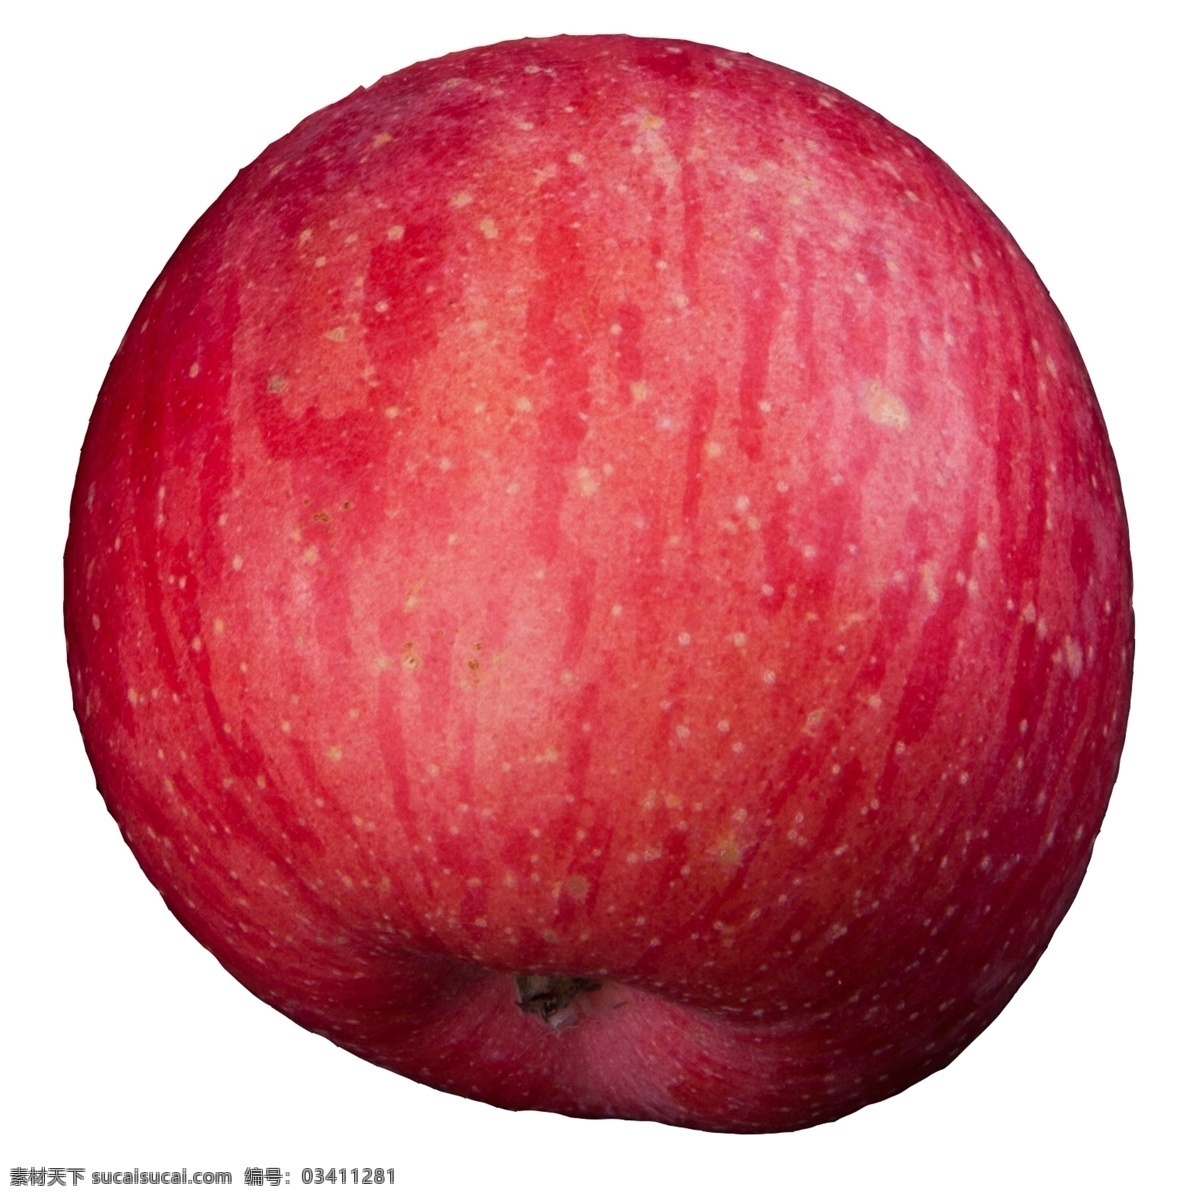 实拍 果林 果树 一个 苹果 红富士 红富士苹果 大苹果 大红苹果 种植水果 苹果果实